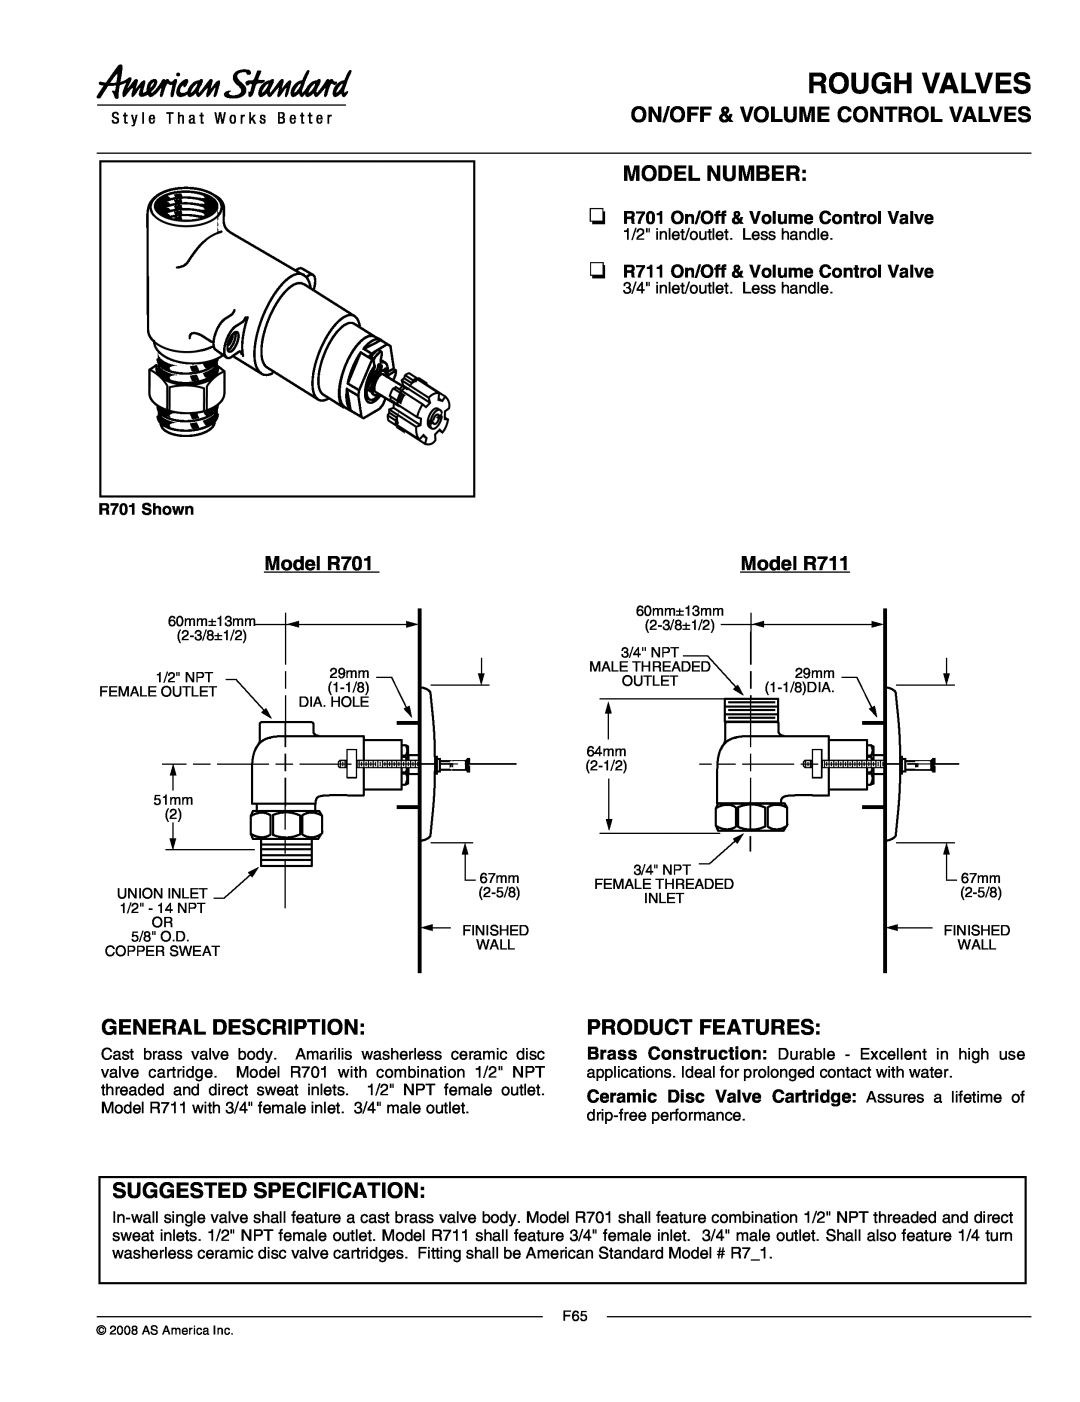 American Standard manual Rough Valves, On/Off & Volume Control Valves Model Number, General Description, Model R701 